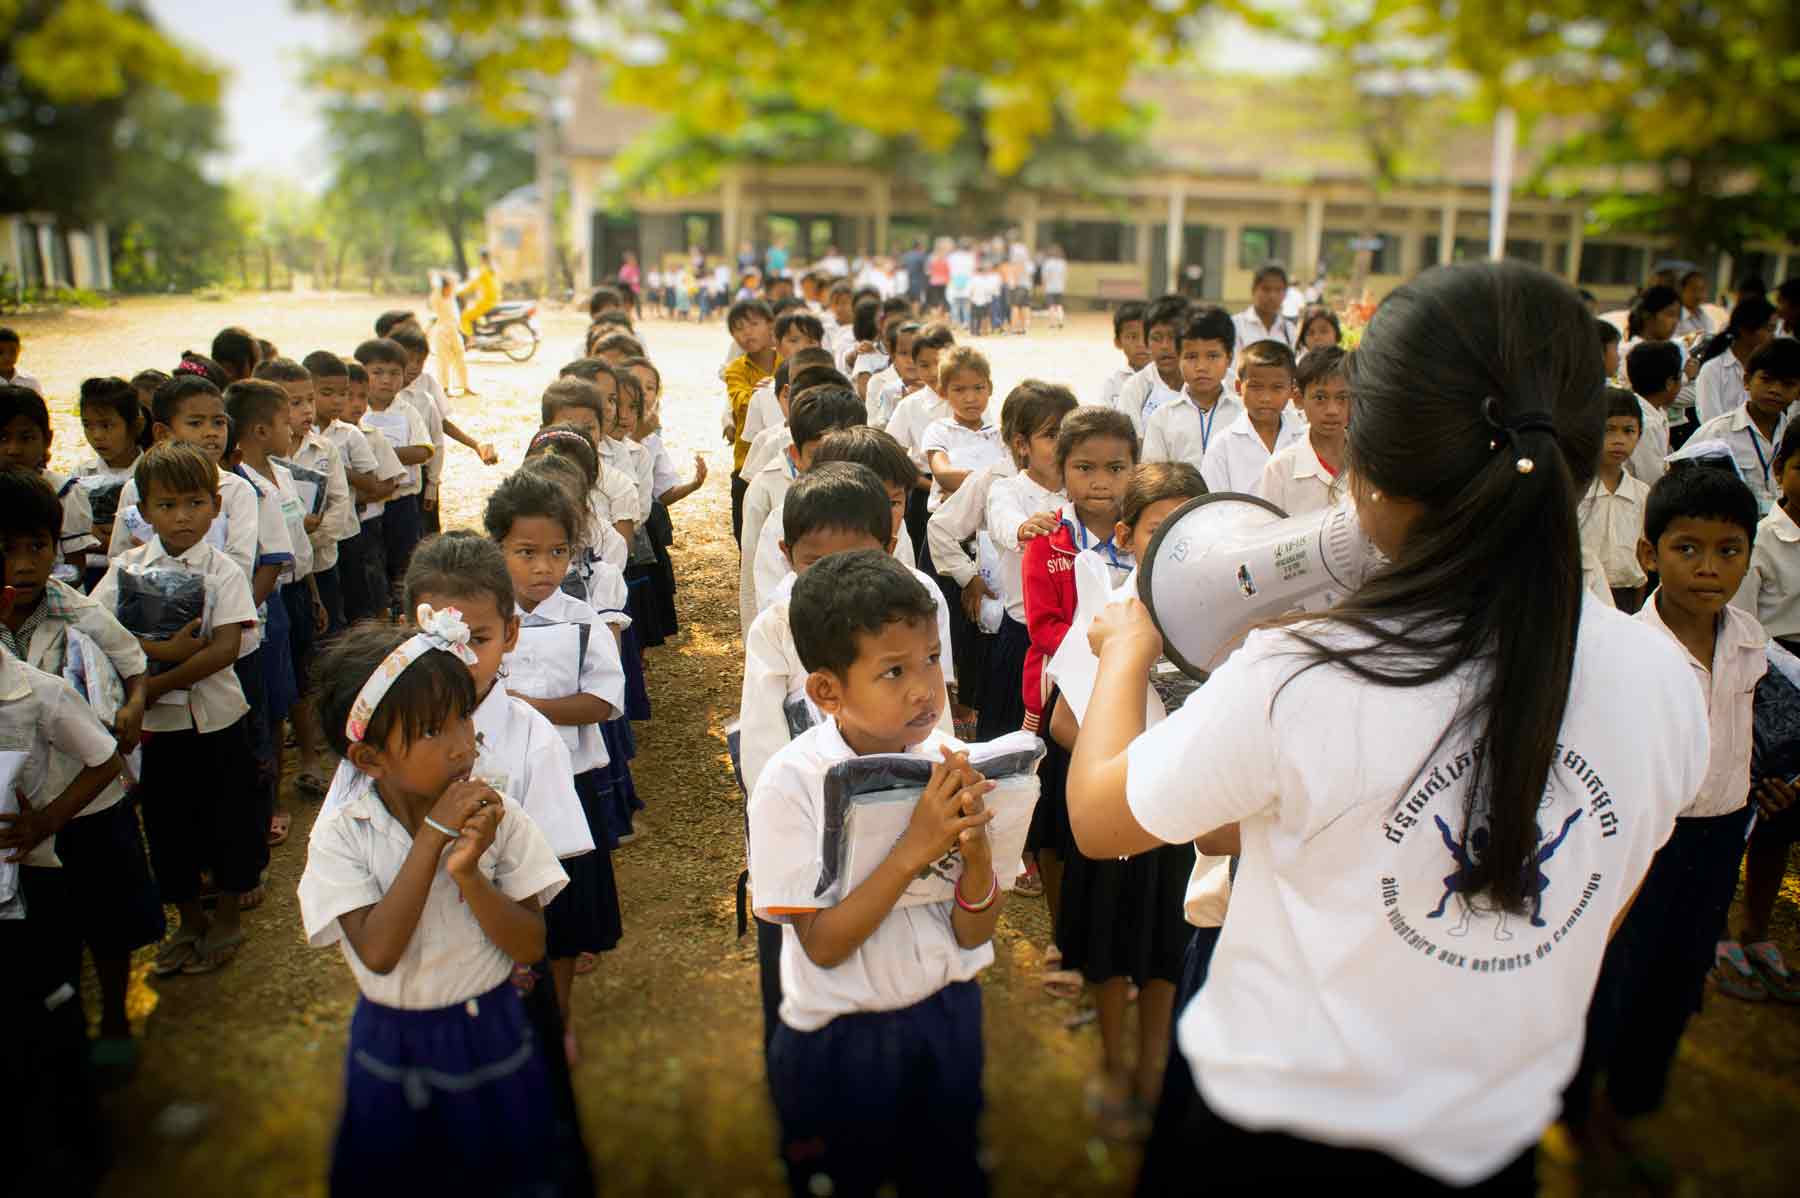 Jeune volontaire au Cambodge lors d’une action humanitaire liée à l’éducation avec des centaines d’enfants dans une école publique.